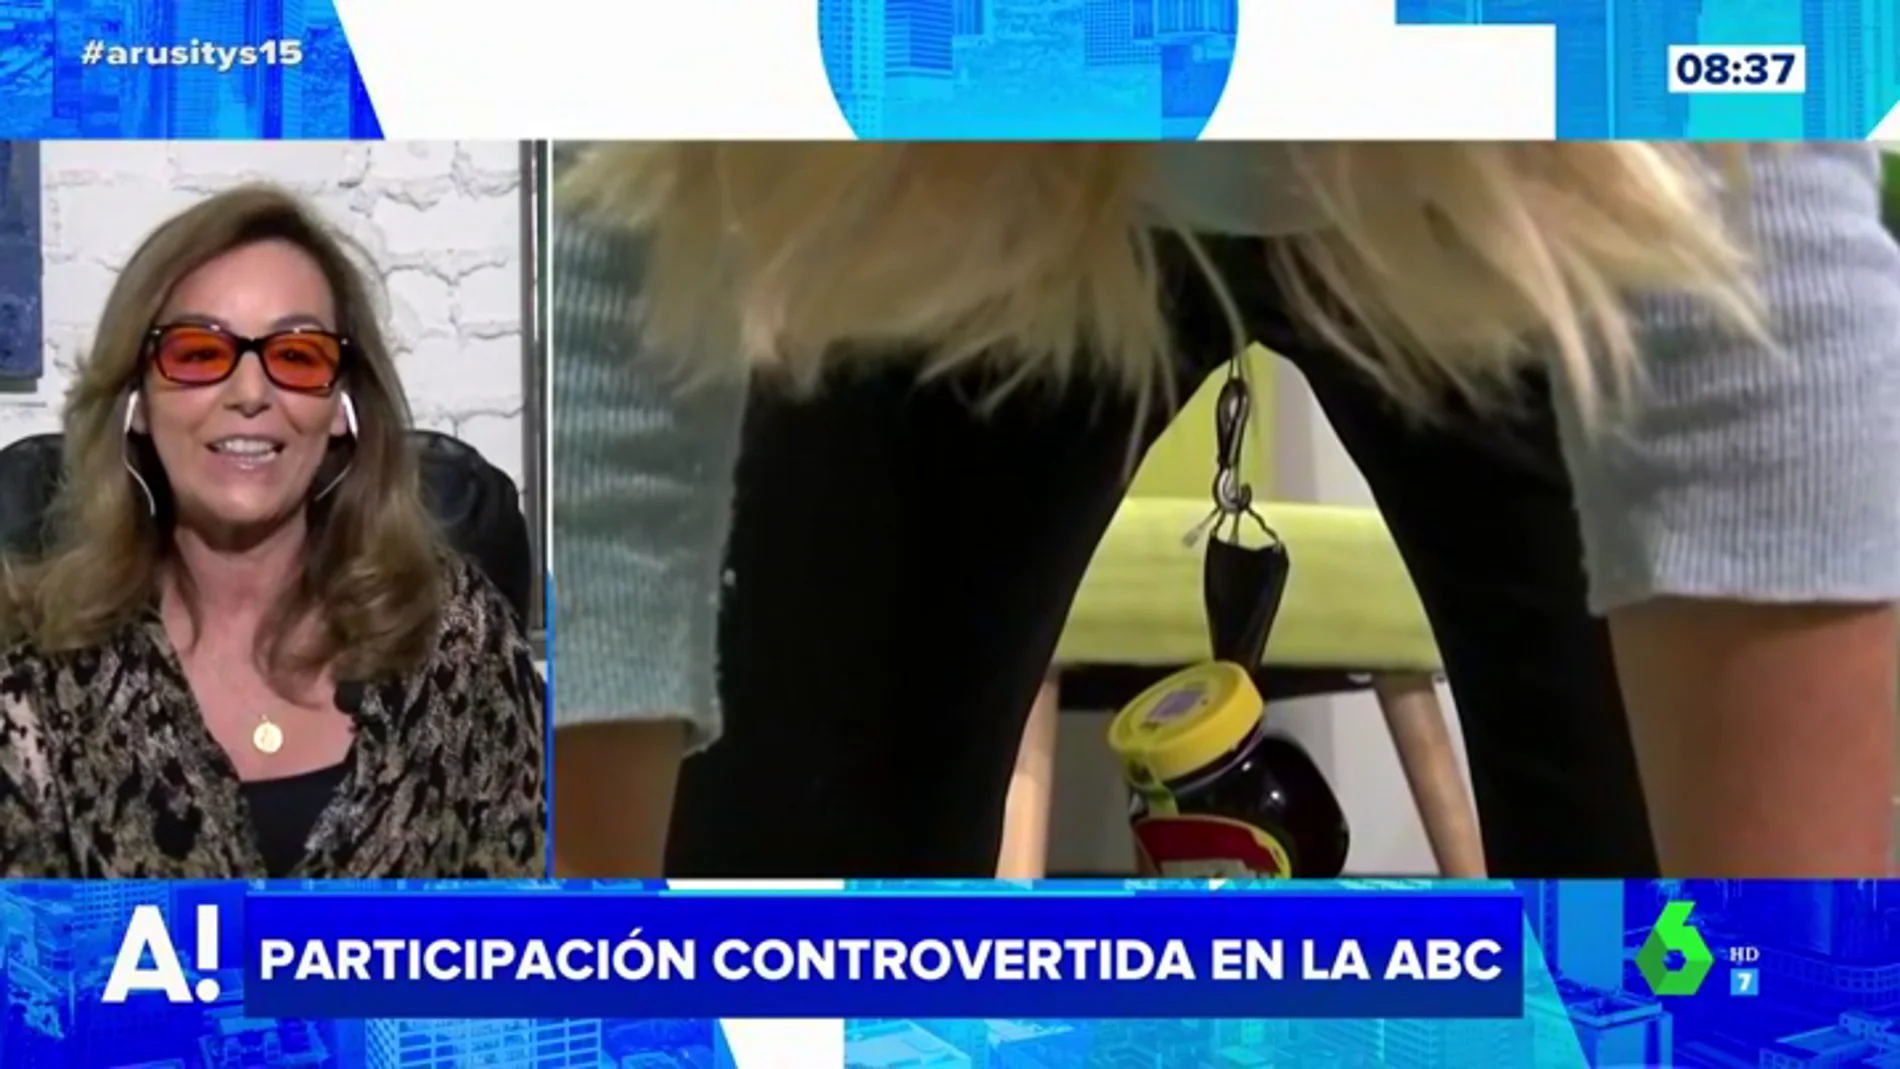 El análisis de María Estévez de la participación en televisión de una mujer capaz de levantar objetos con la vagina: